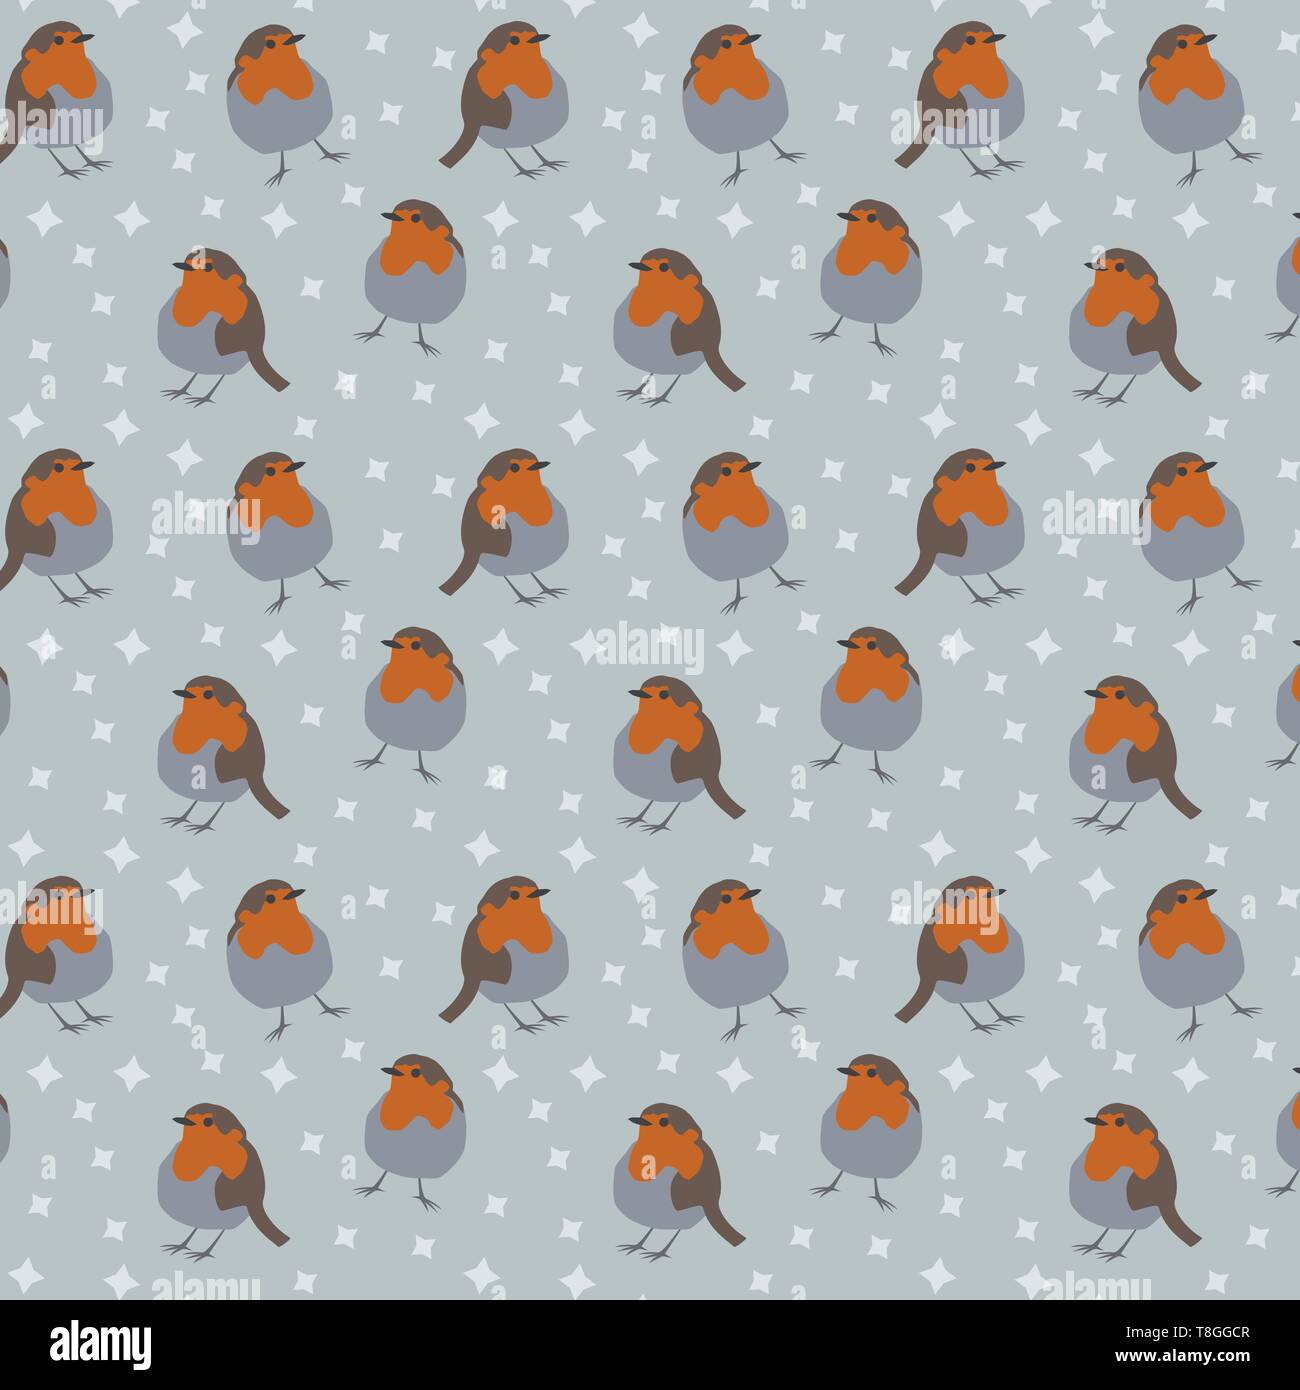 Robin aves patrón vectorial con fondo gris y estrellas Ilustración del Vector